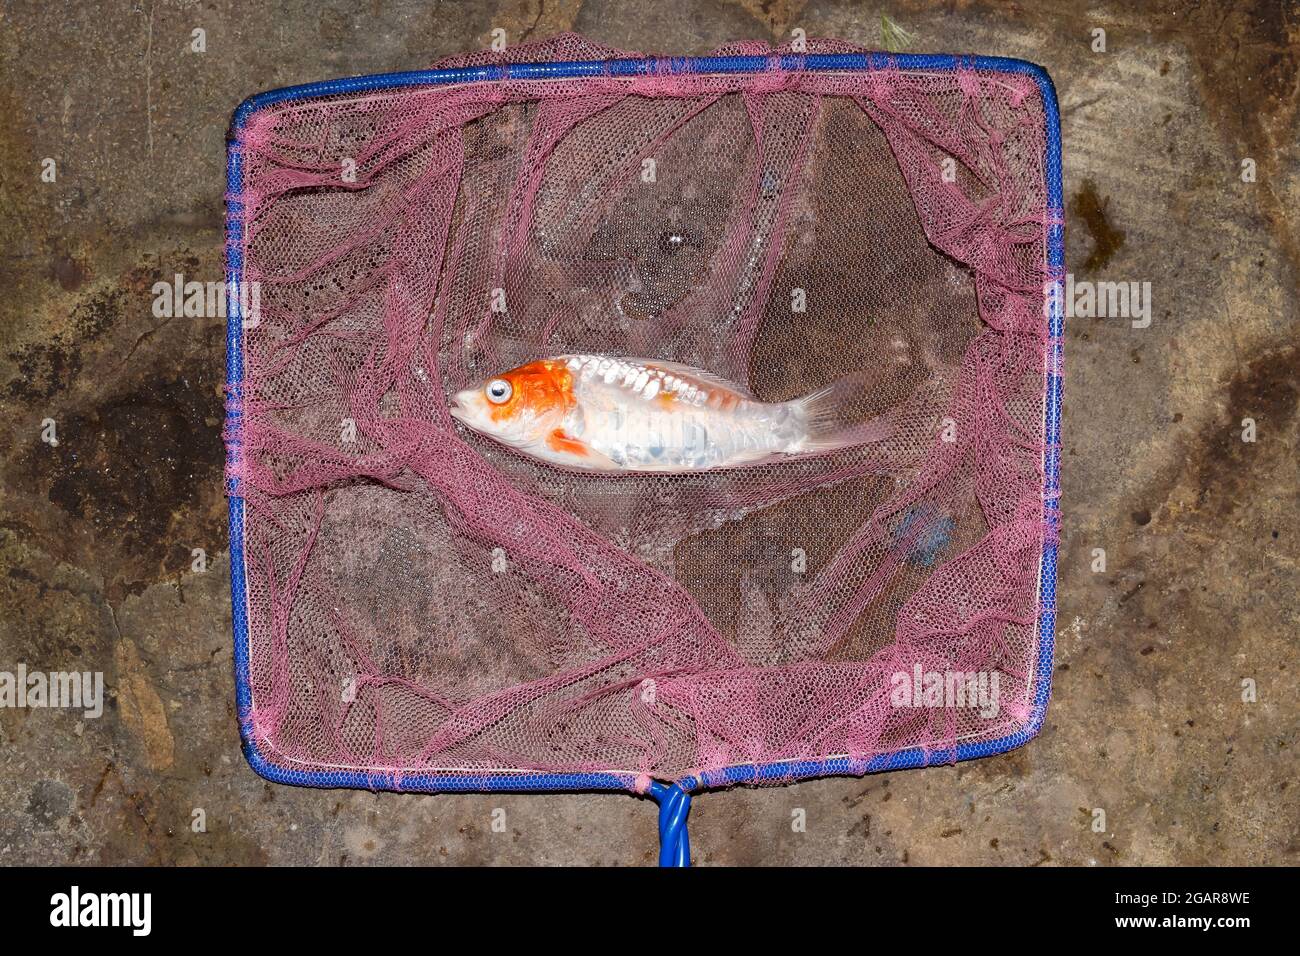 Los peces Kohaku Koi murieron debido a la mala calidad del agua, es decir, envenenamiento por amoníaco. Captada por red de pesca. Foto de stock